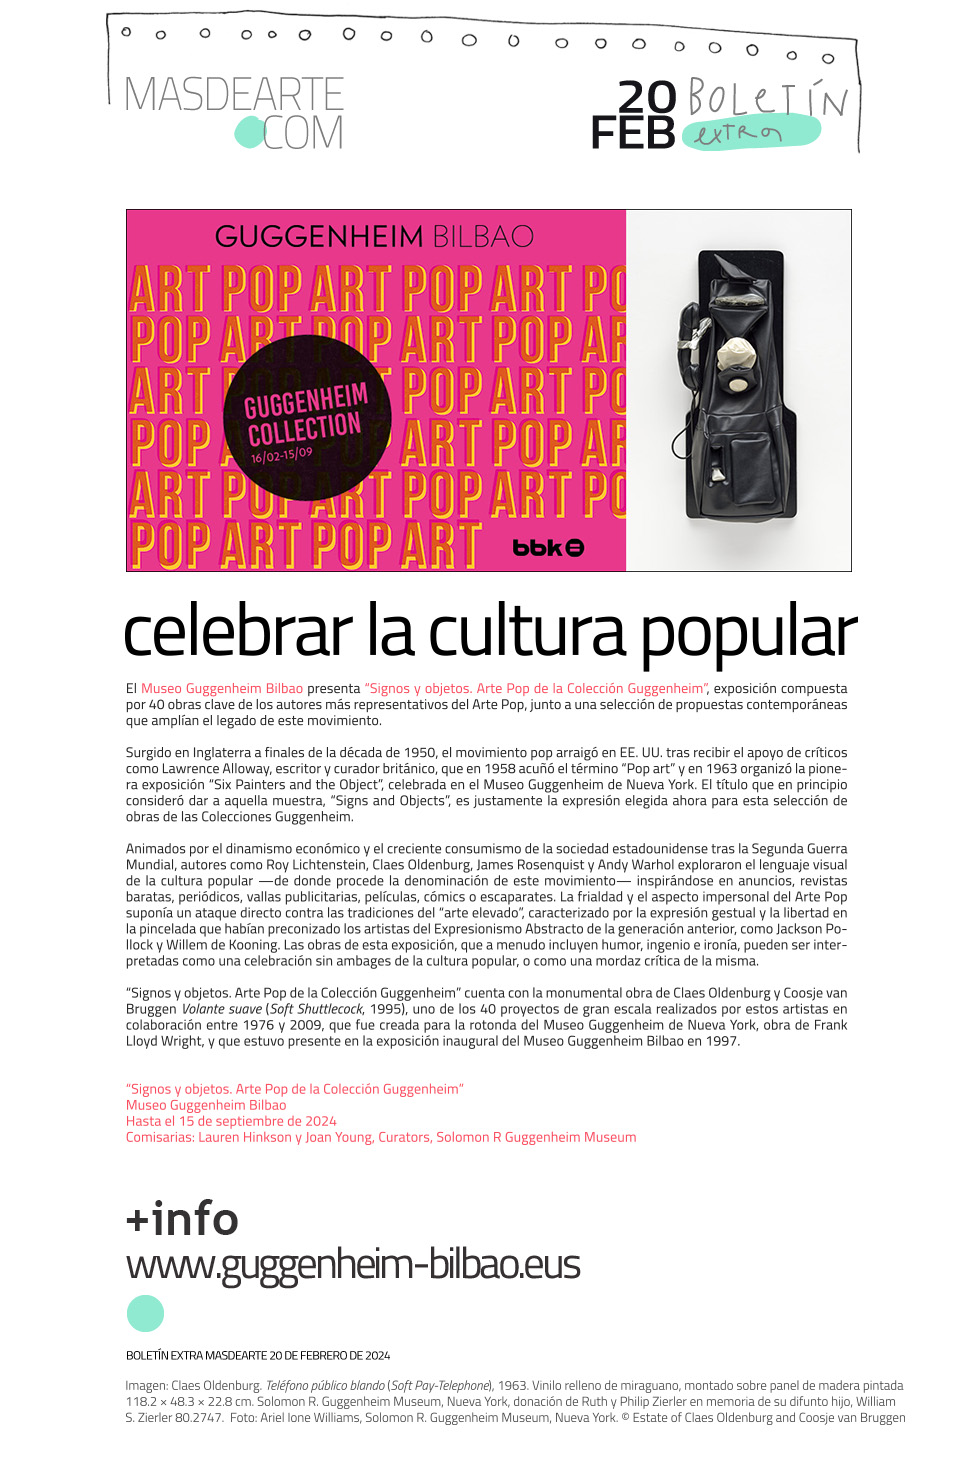 Signos y objetos: Arte Pop de la Colección
 Guggenheim, en el Museo Guggenheim Bilbao. Hasta el 15 de septiembre 2024